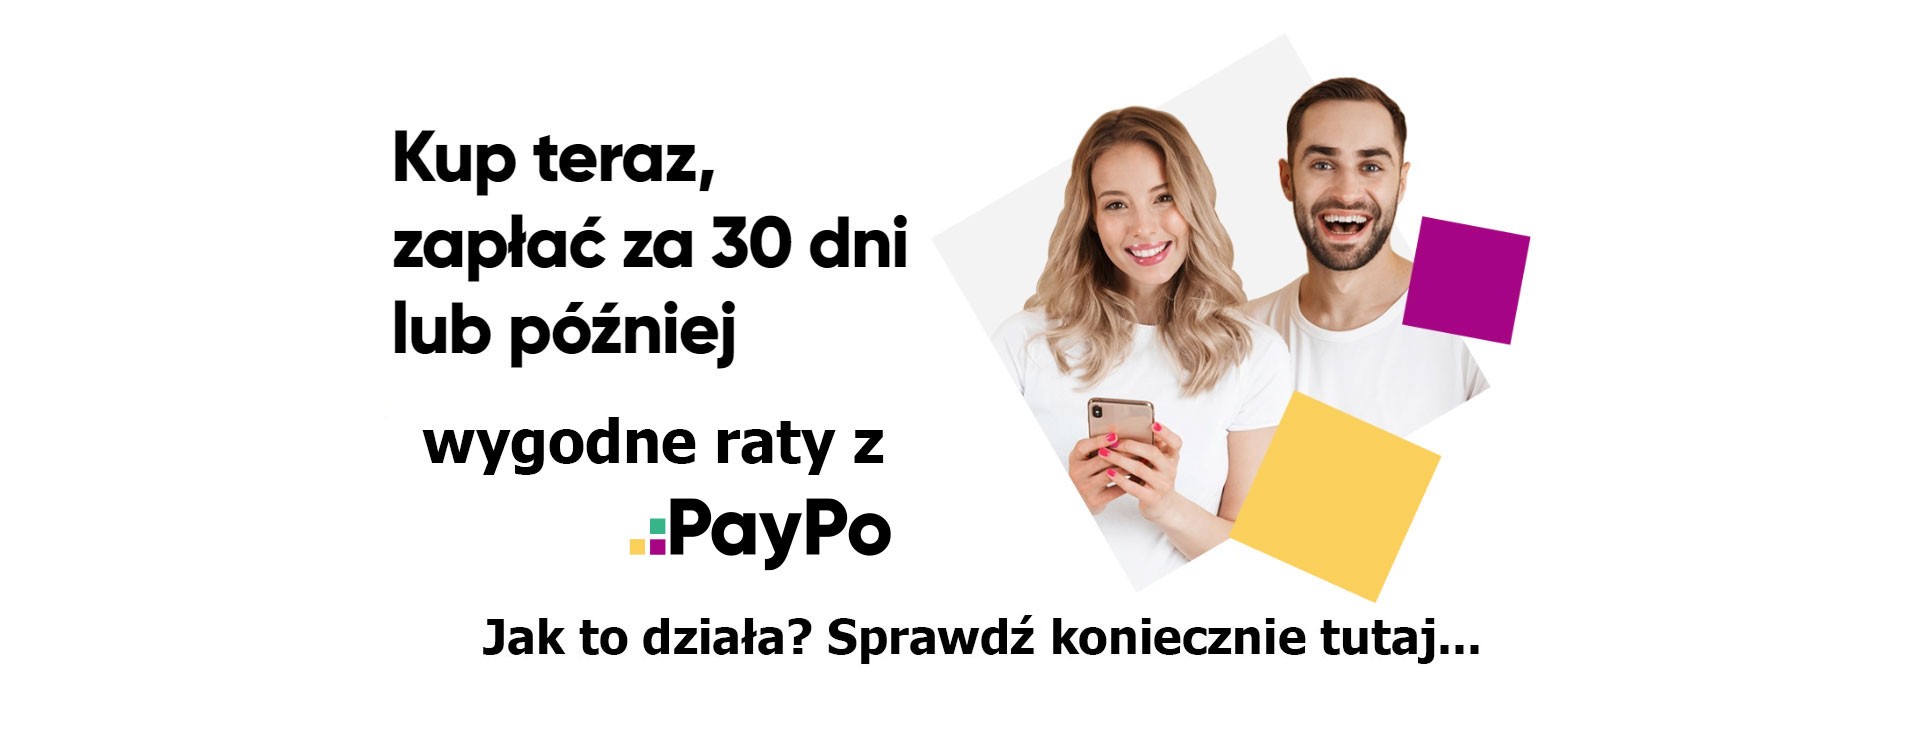 PayPo zakupy na raty